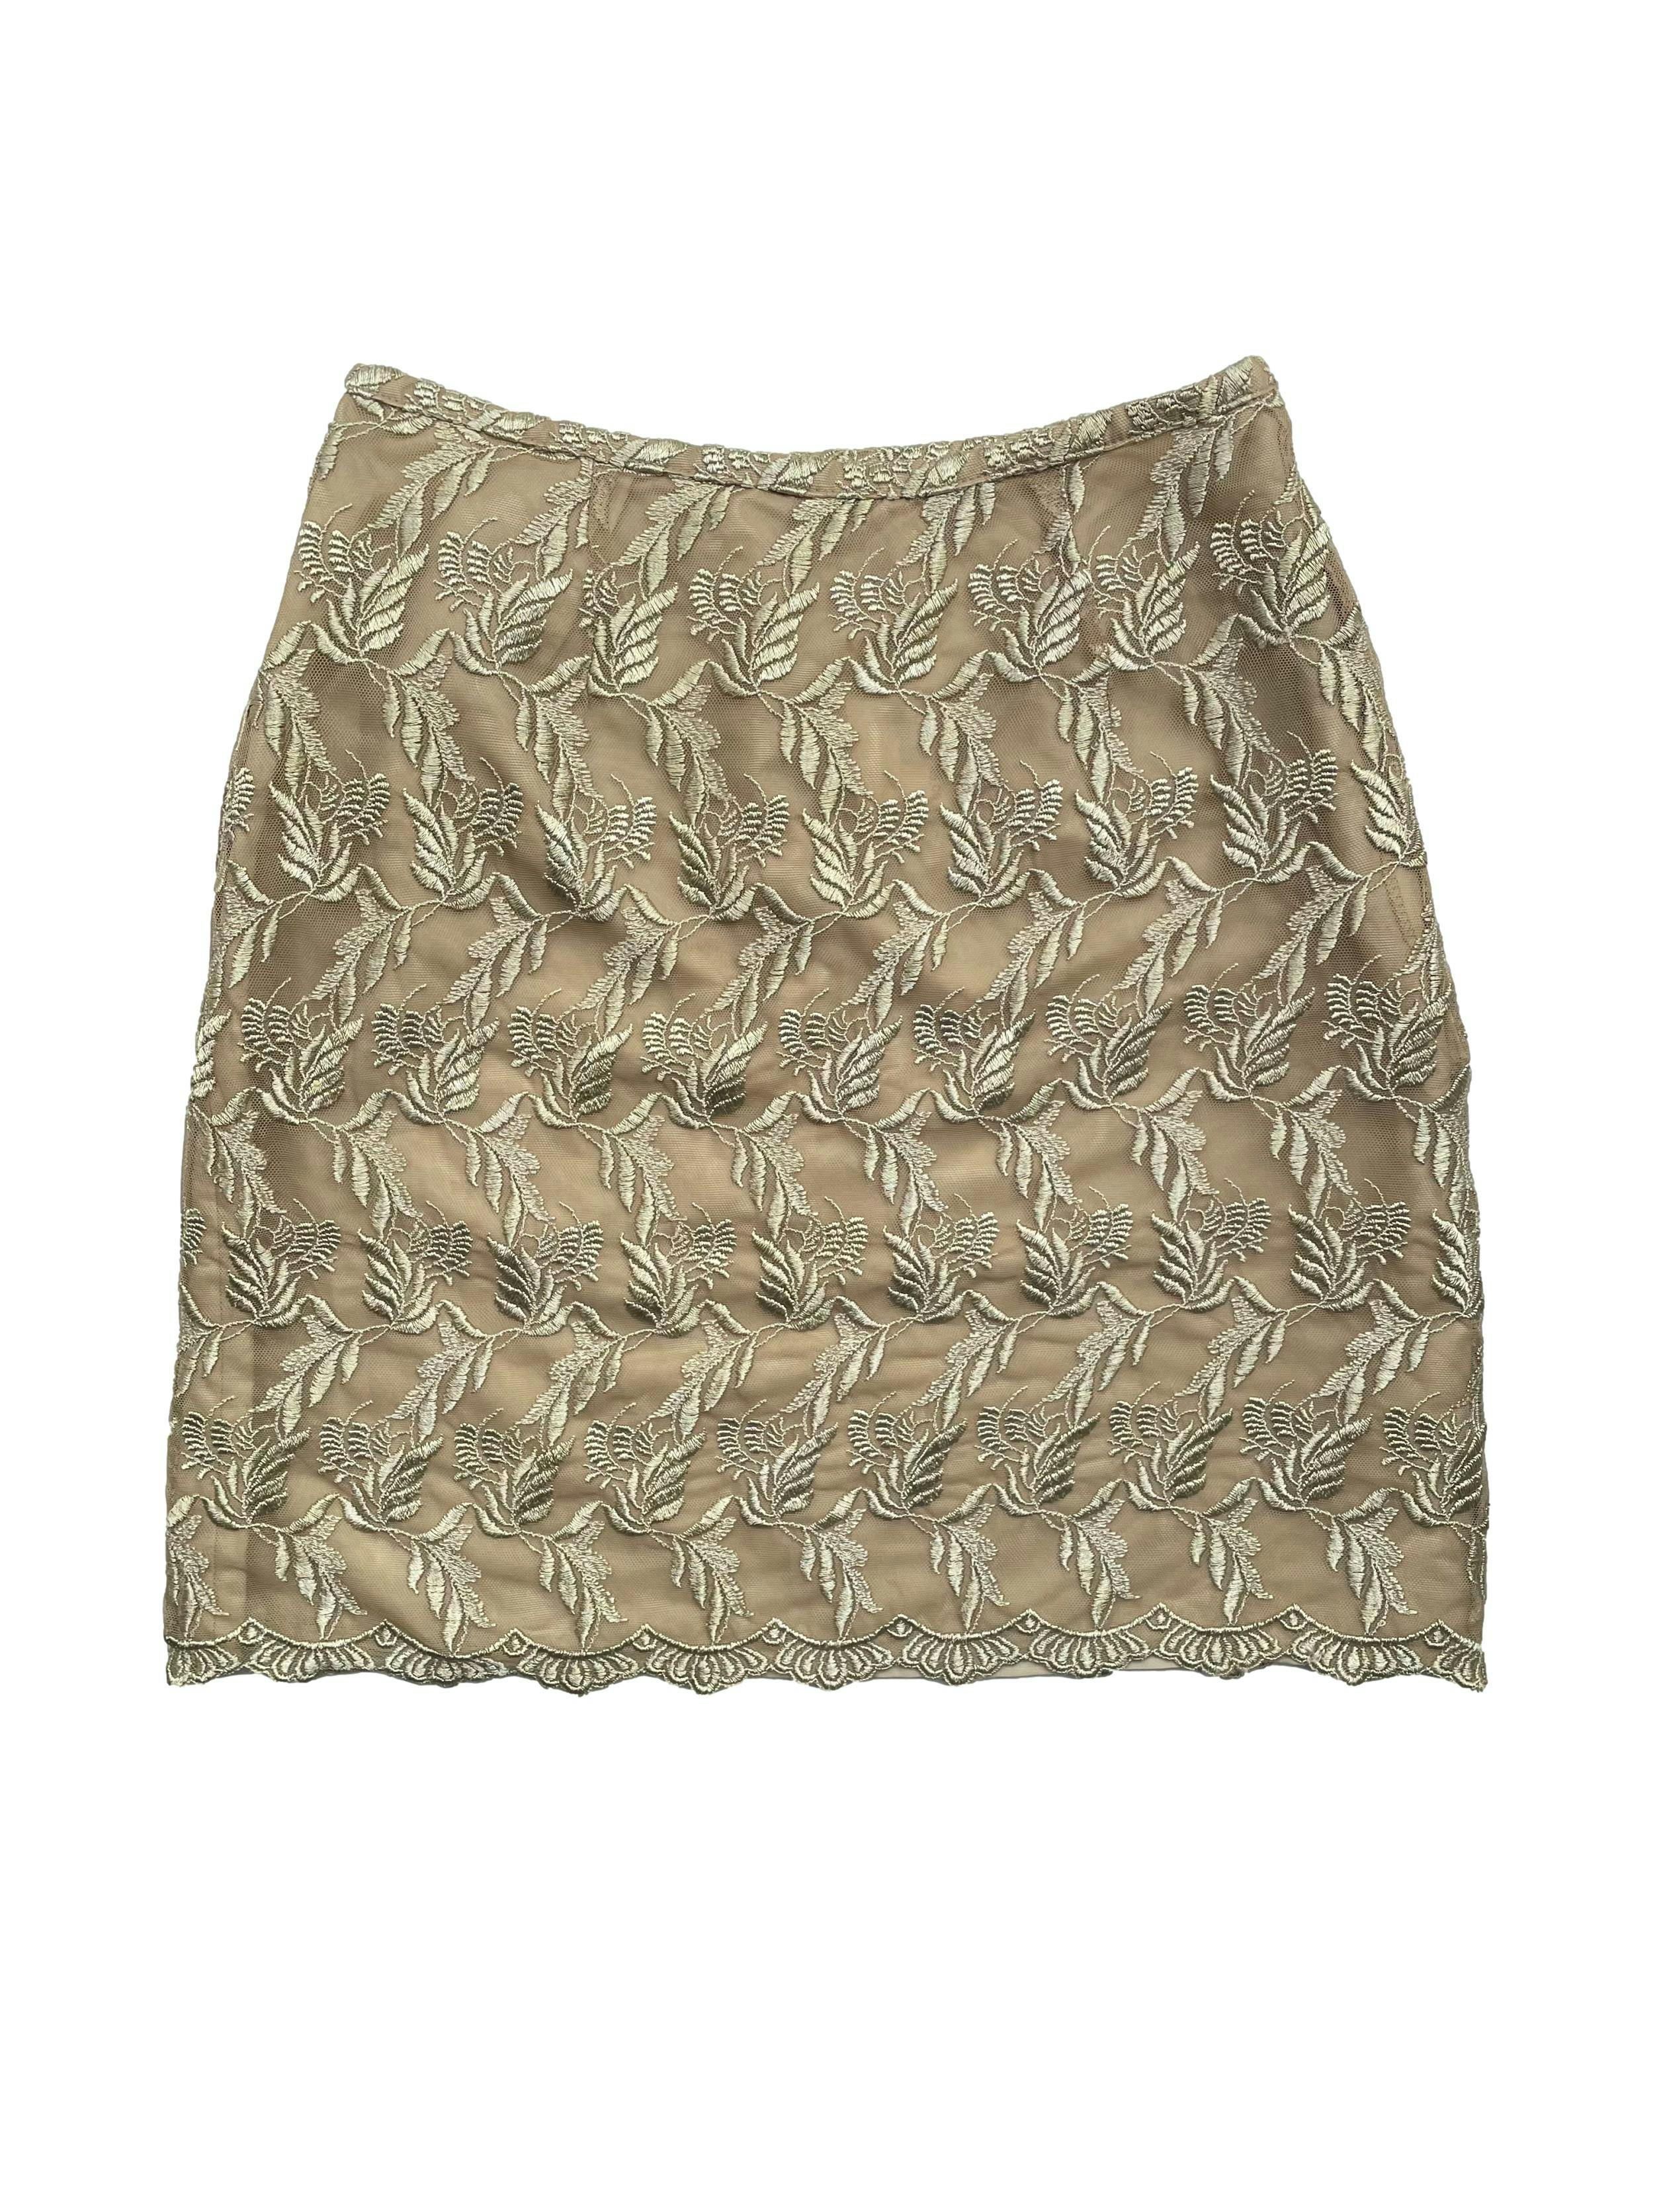 Falda mini George de tul bordado color arena con forro y cierre lateral. Cintura 66cm, Largo 48cm.